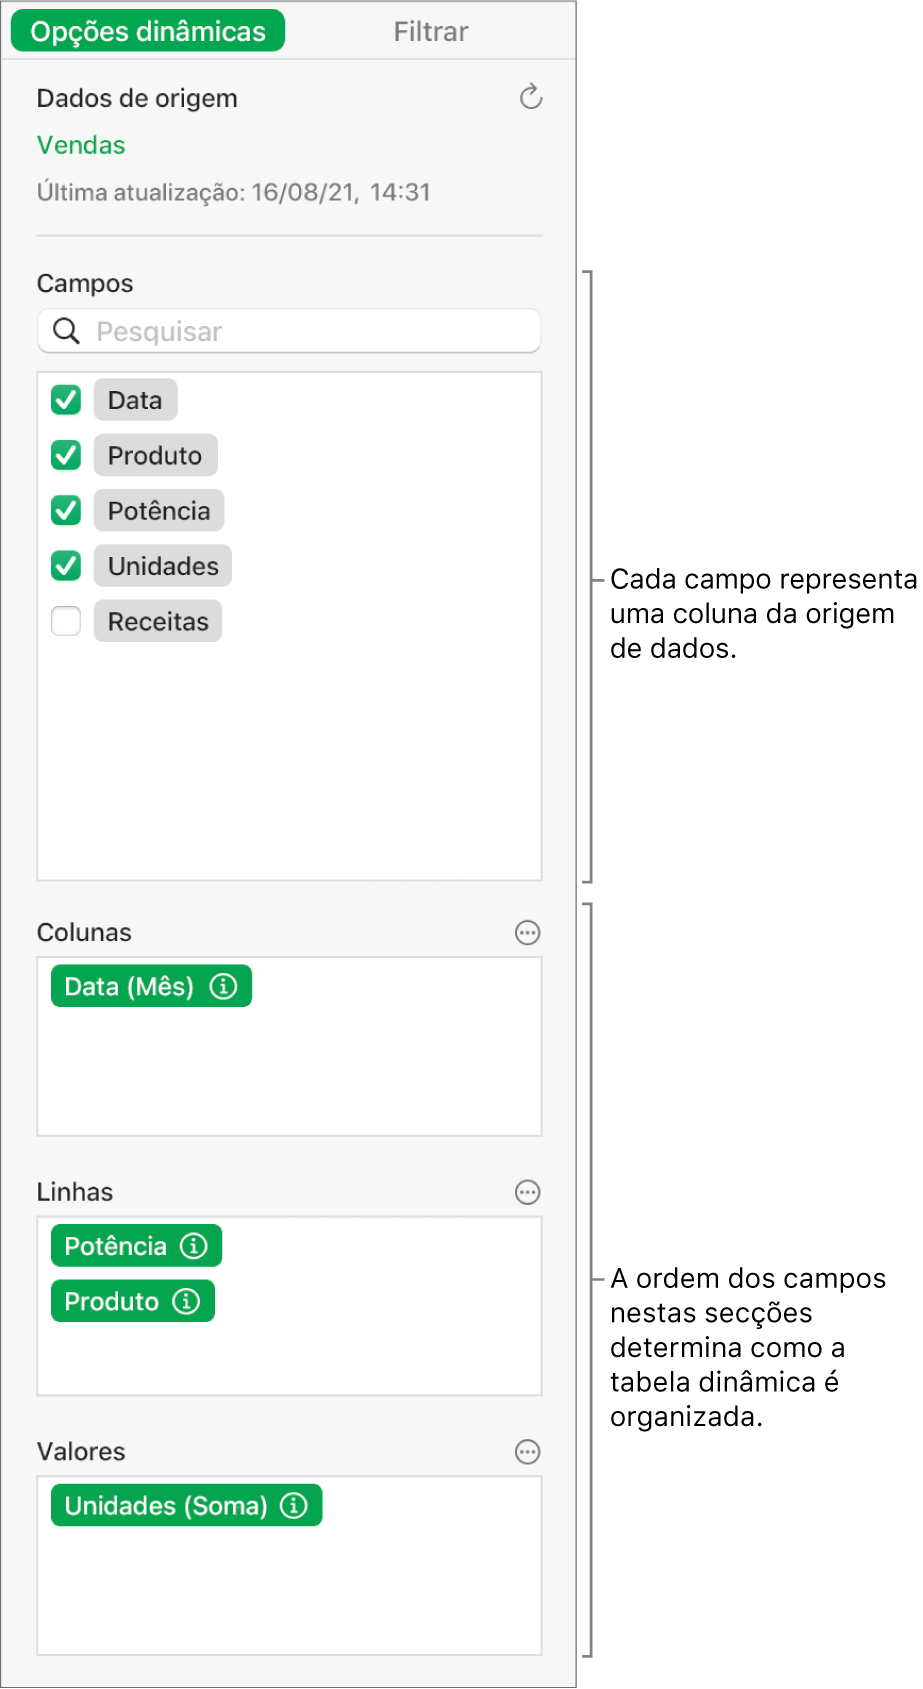 O menu "Opções dinâmicas” a mostrar campos nas secções “Colunas”, “Linhas” e “Valores”, bem como os controlos para editar os campos e atualizar a tabela dinâmica.